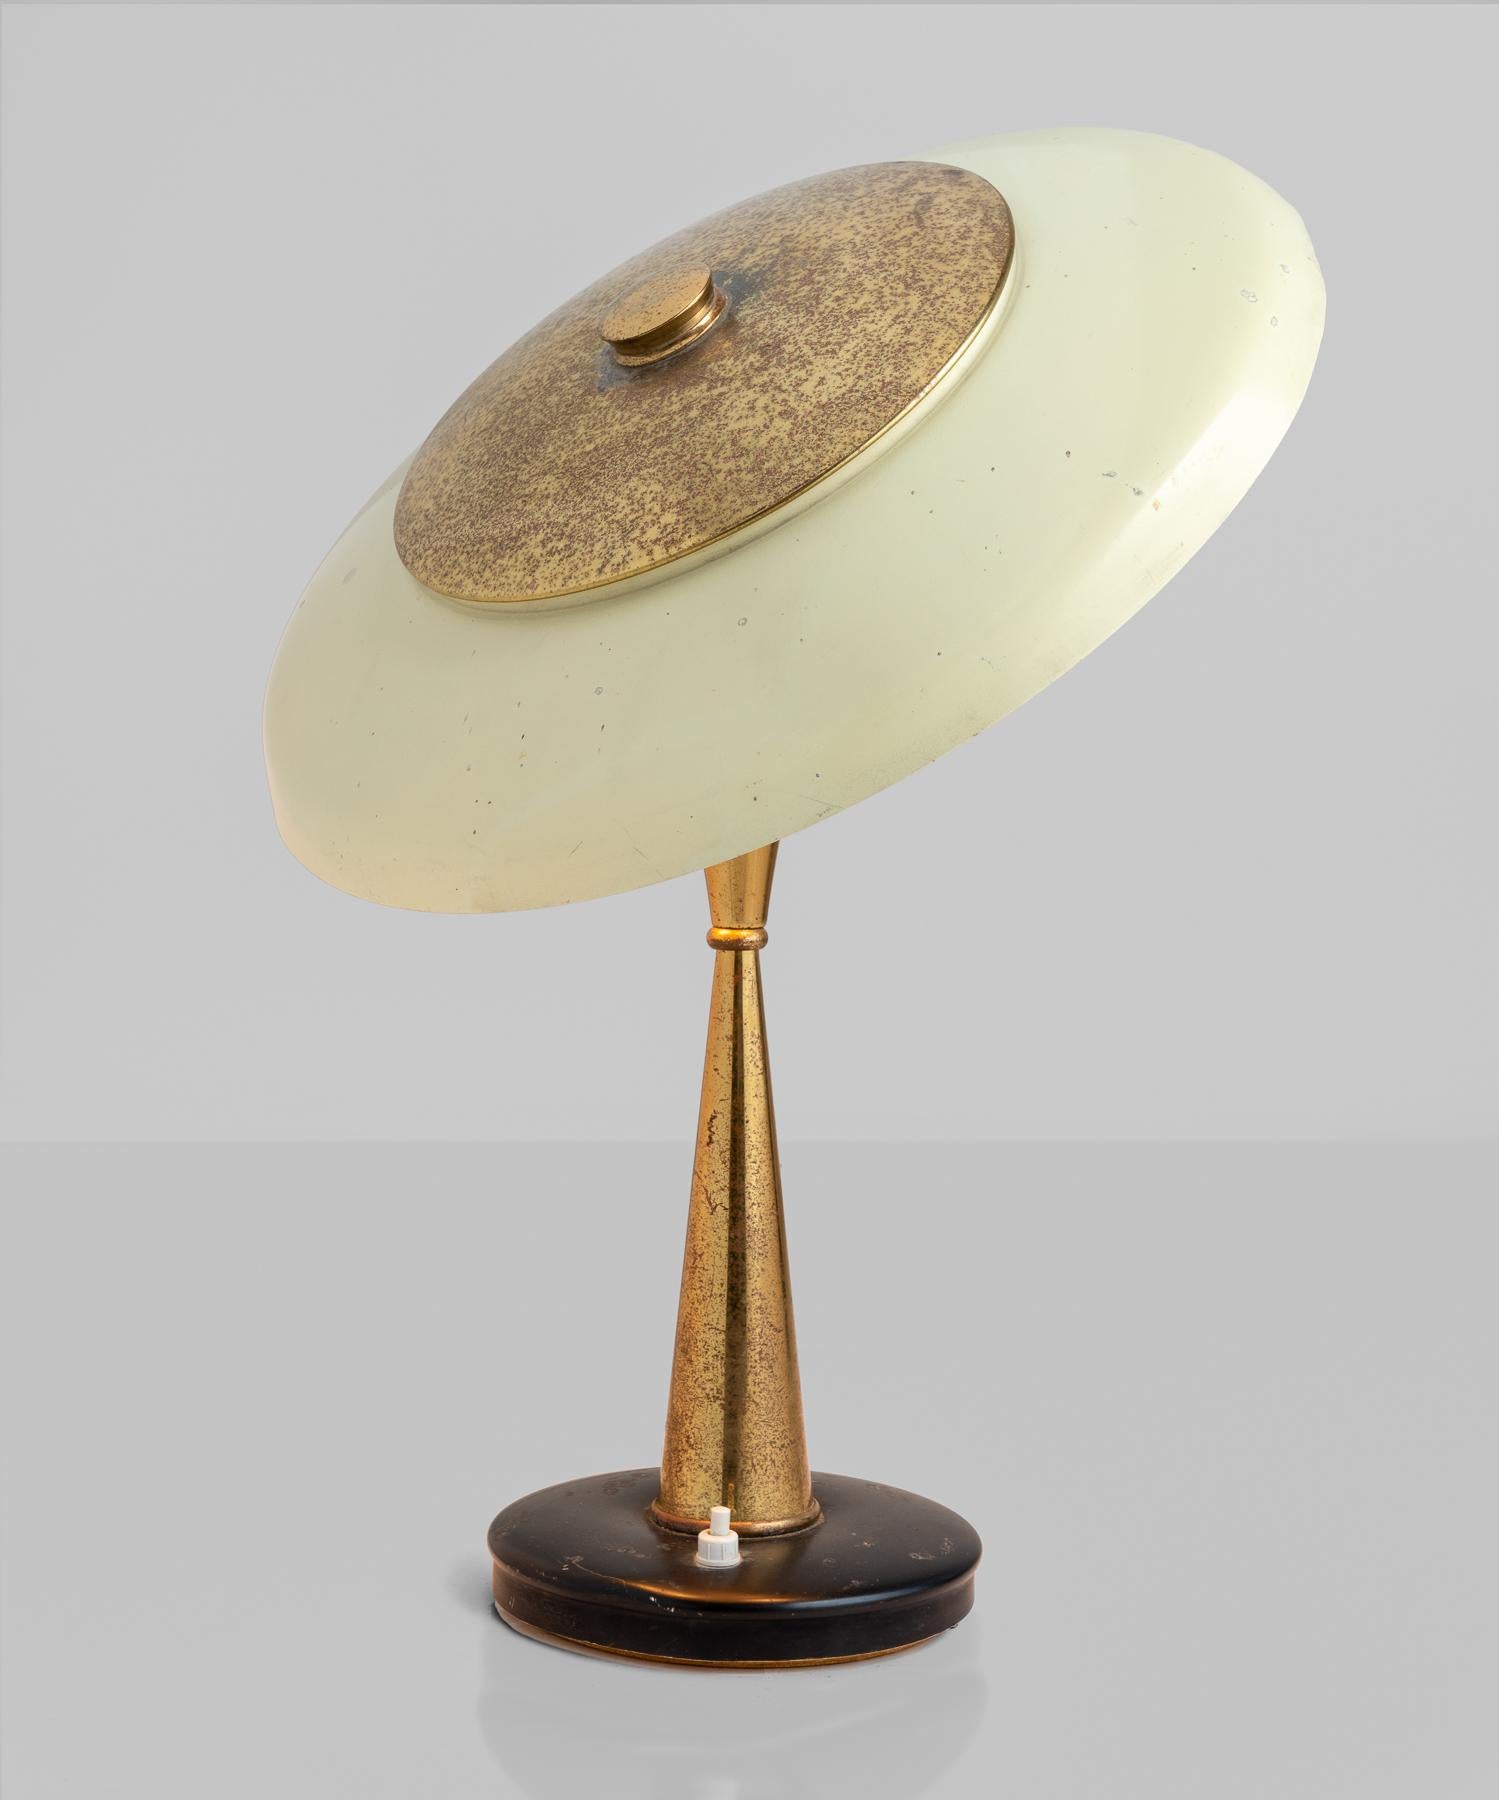 Modern Oscar Torlasco Table Lamp, Italy circa 1950